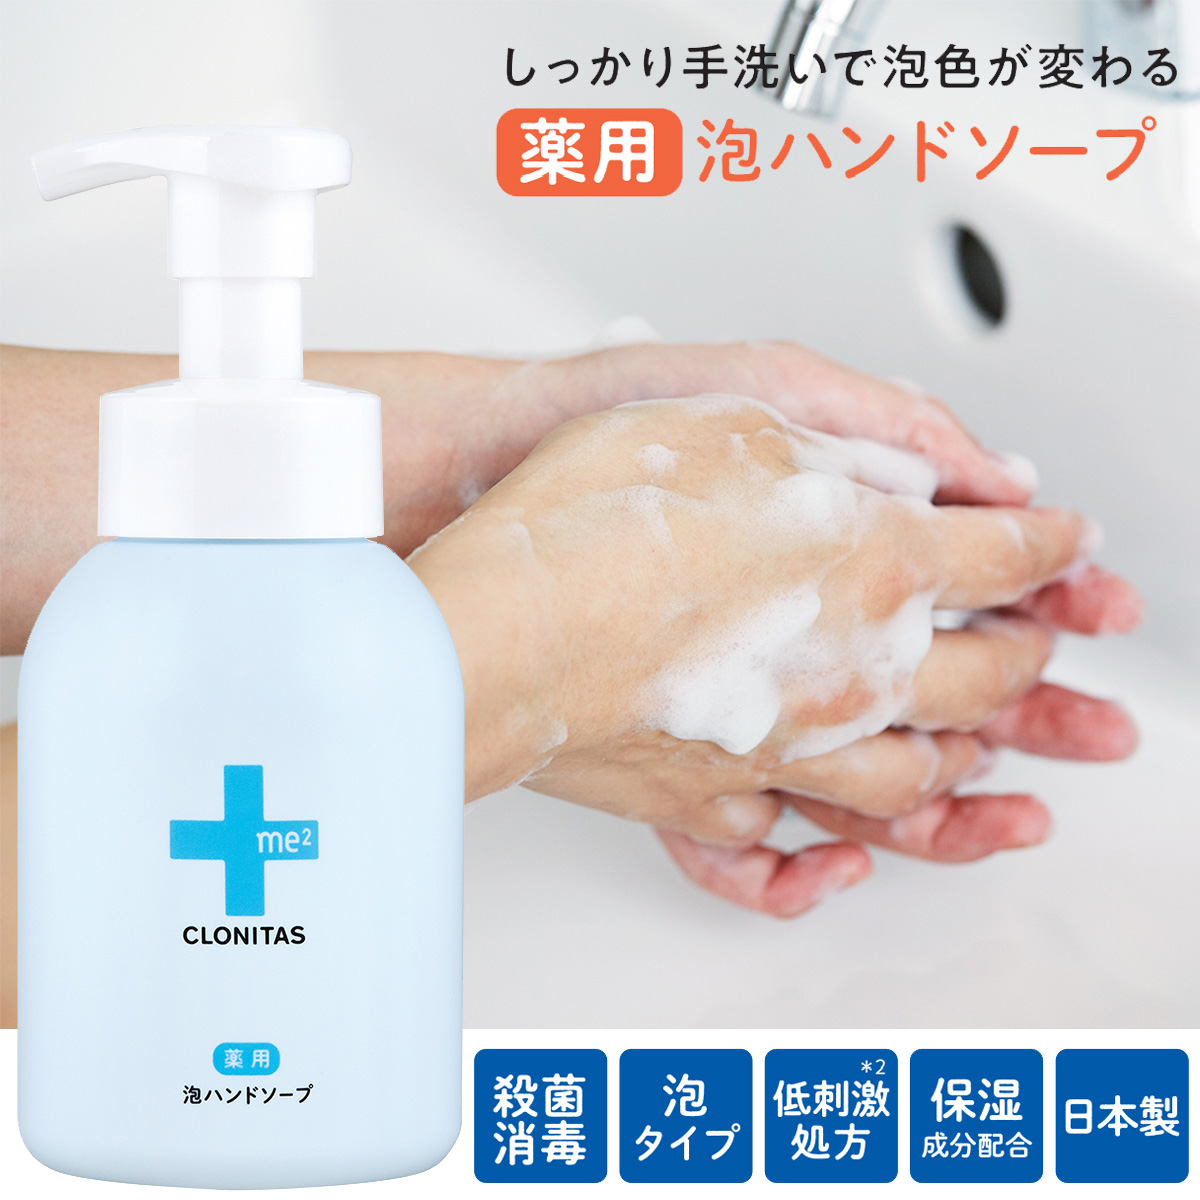 【CLONITAS】クロニタス 薬用泡ハンドソープ 低刺激でしっかり殺菌消毒【日本製】